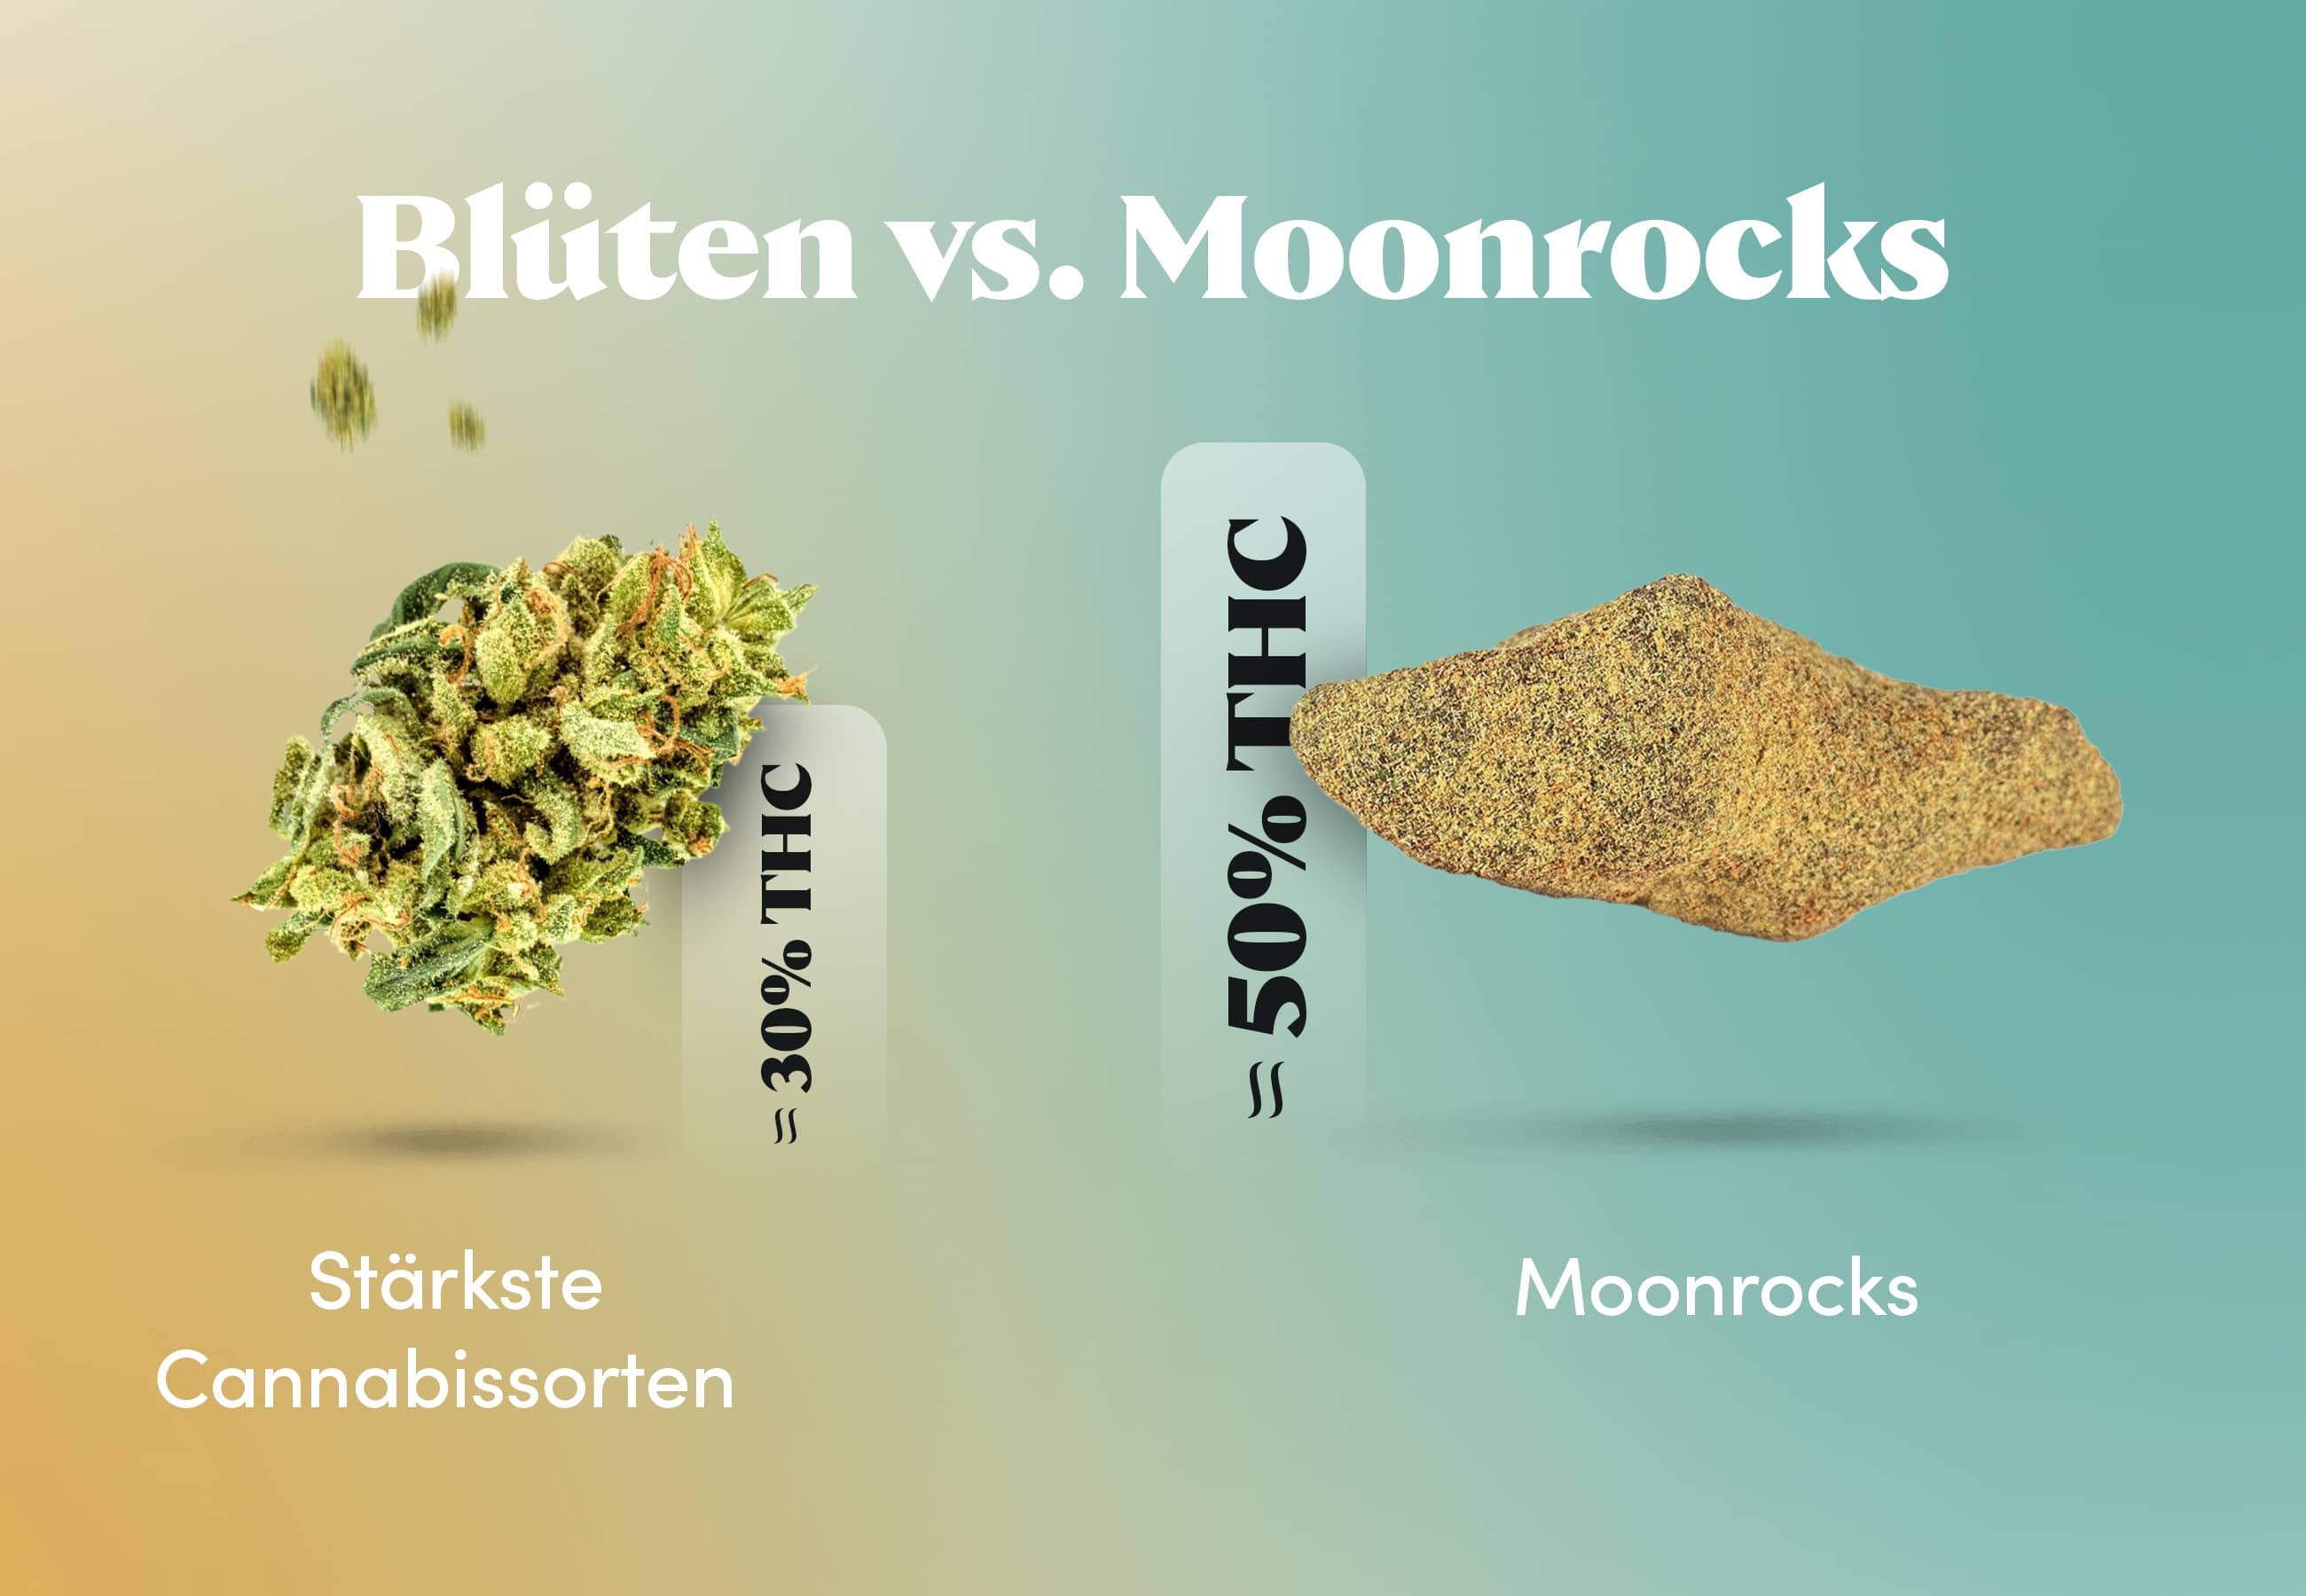 Stärkste Cannabissorten vs. Moonrocks - THC-Gehalt im Vergleich